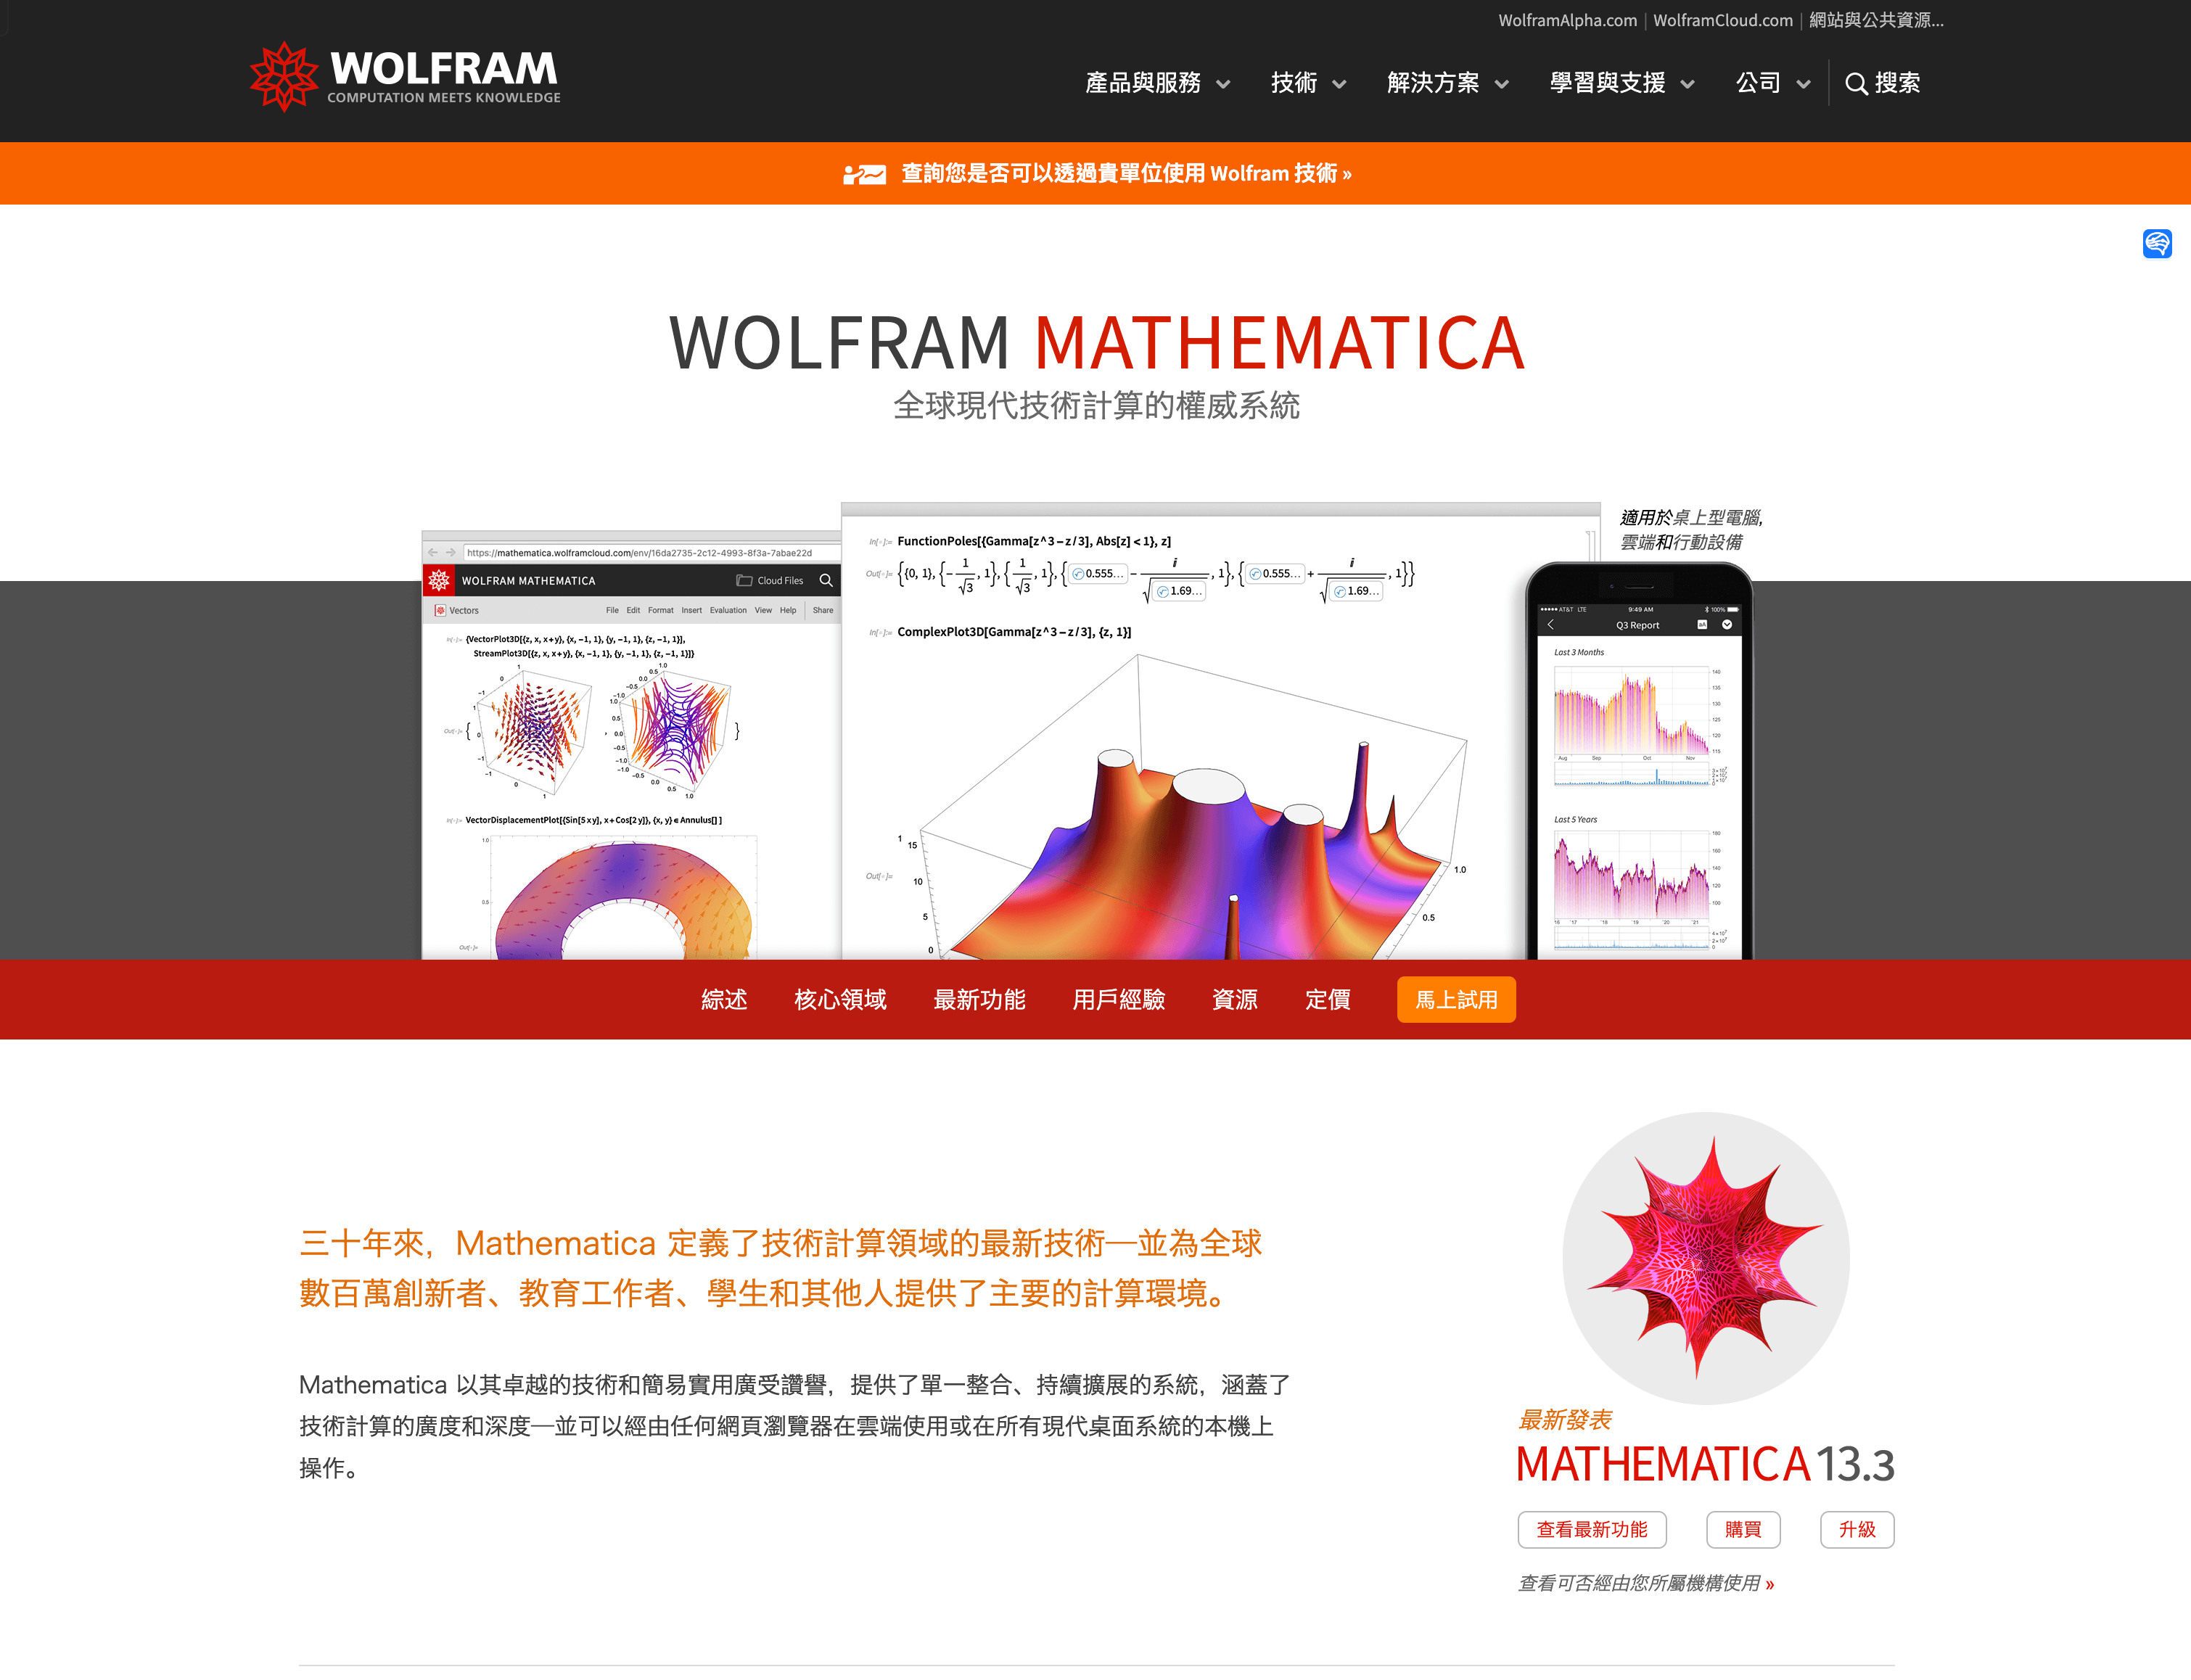 「互联网速记」也许是最优雅的 Wolfram Mathematica 破解方式 - 2